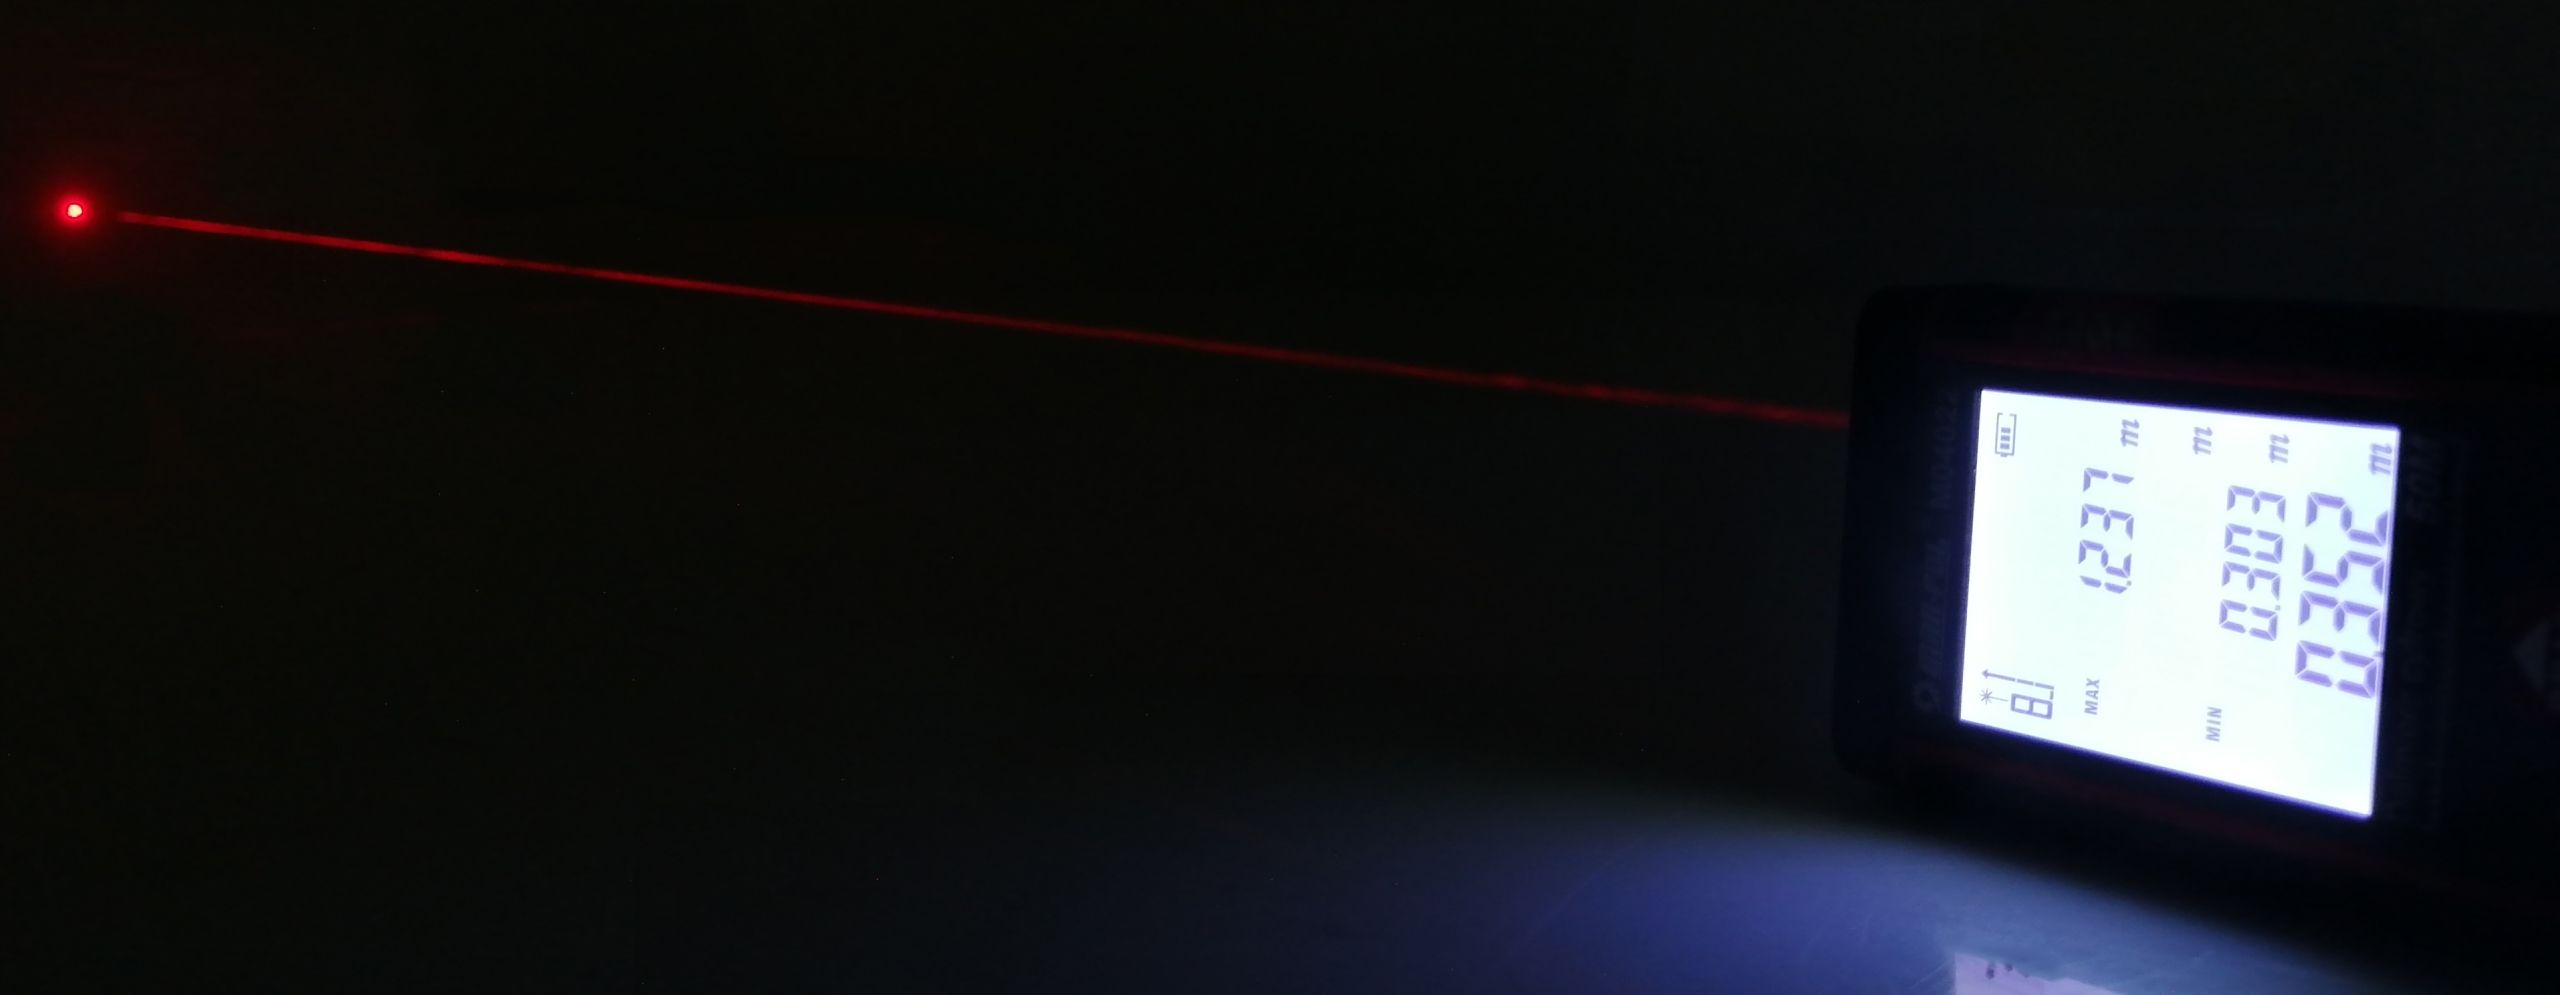 Dalmierz Laserowy Miernik Odległości Cyfrowy 50M